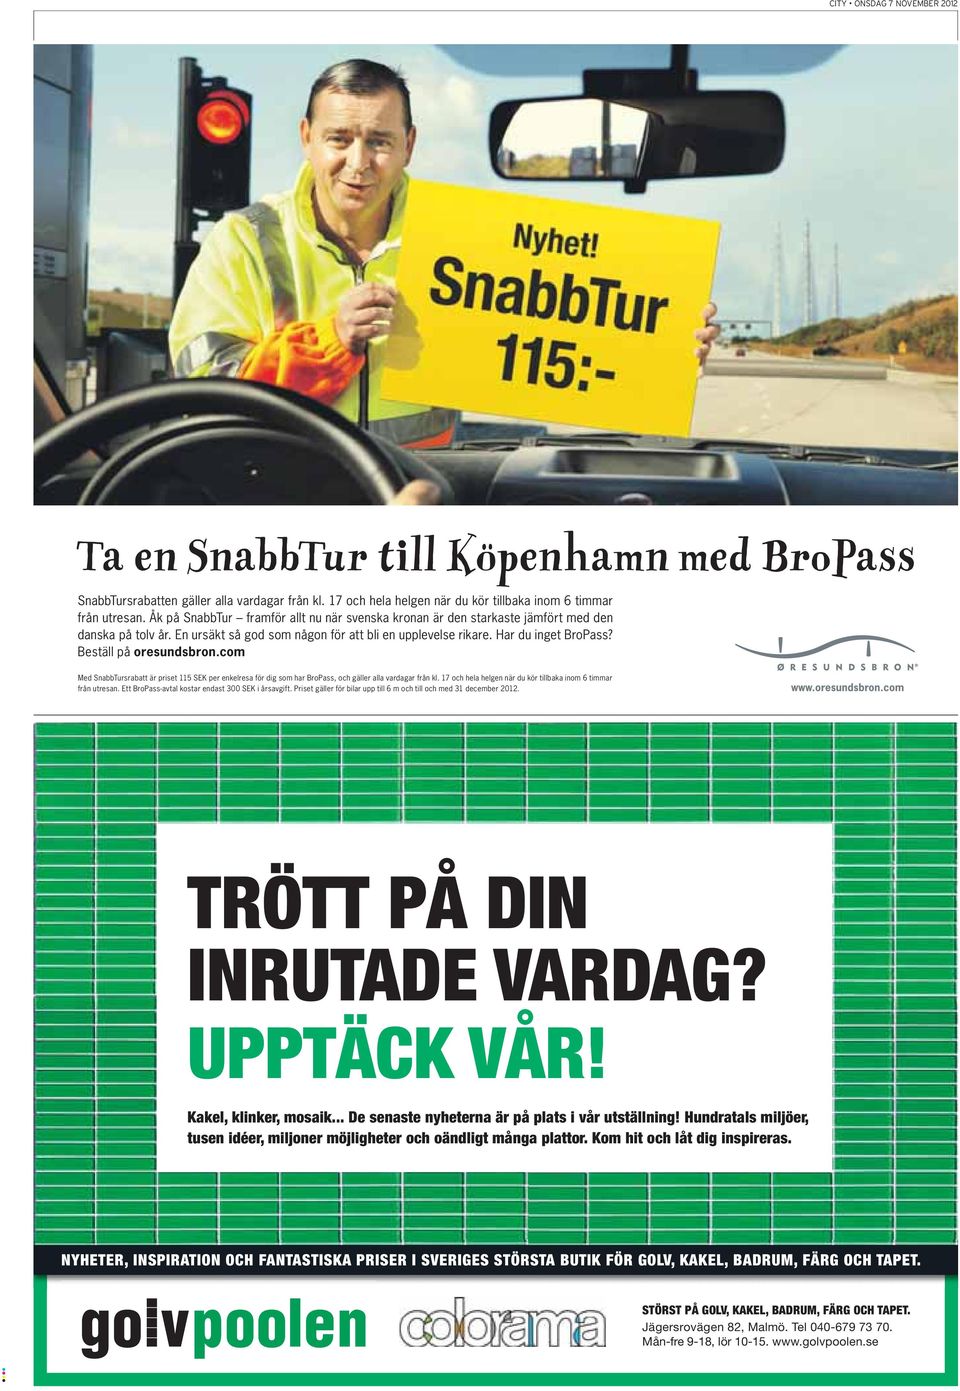 Beställ på oresundsbron.com Med SnabbTursrabatt är priset 115 SEK per enkelresa för dig som har BroPass, och gäller alla vardagar från kl.